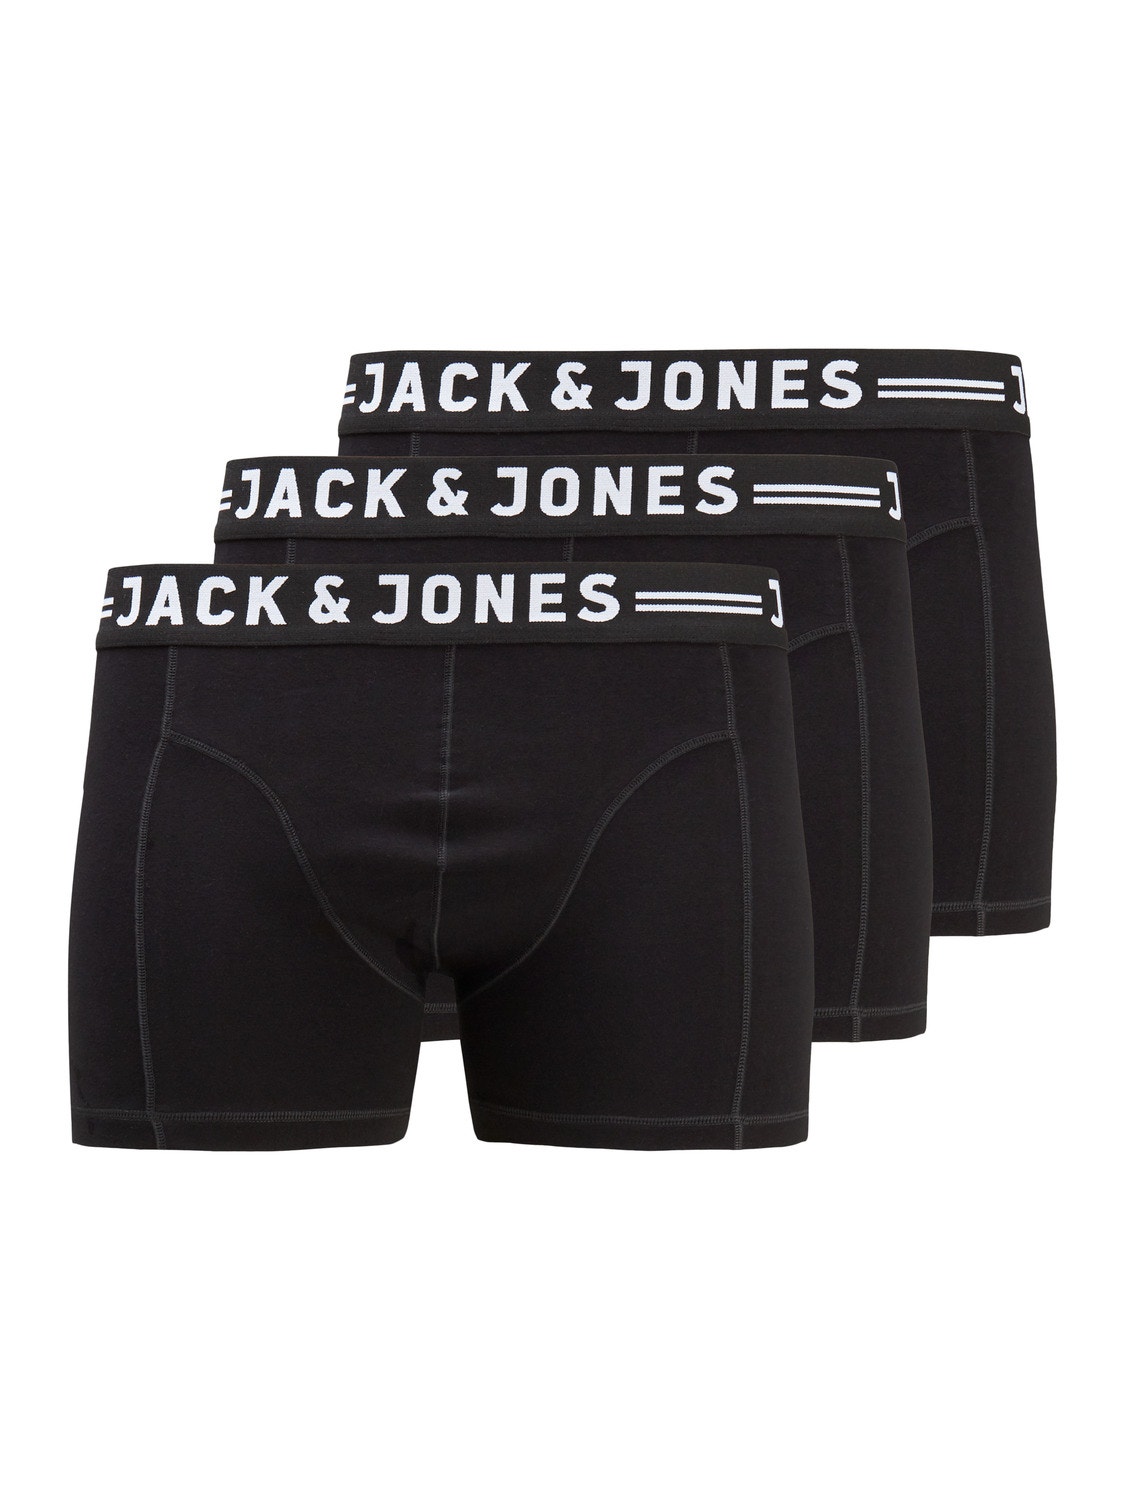 Jack & Jones Plus Size 3-pak Trunks -Black - 12147591